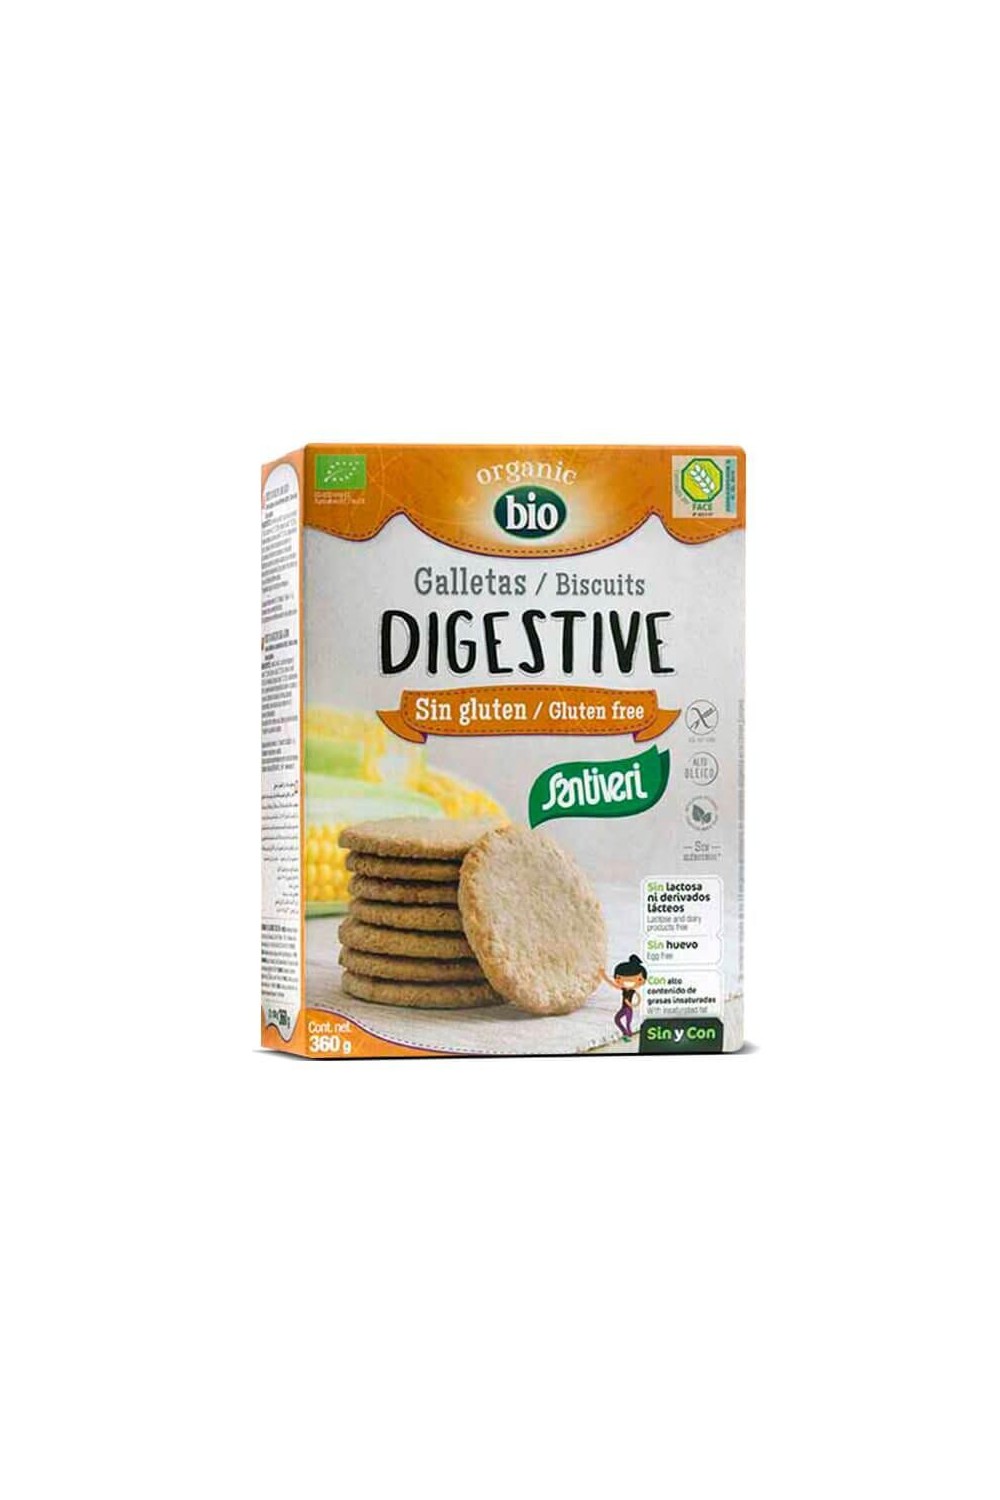 Santiveri Digestive Biscuits Gluten Free 360g